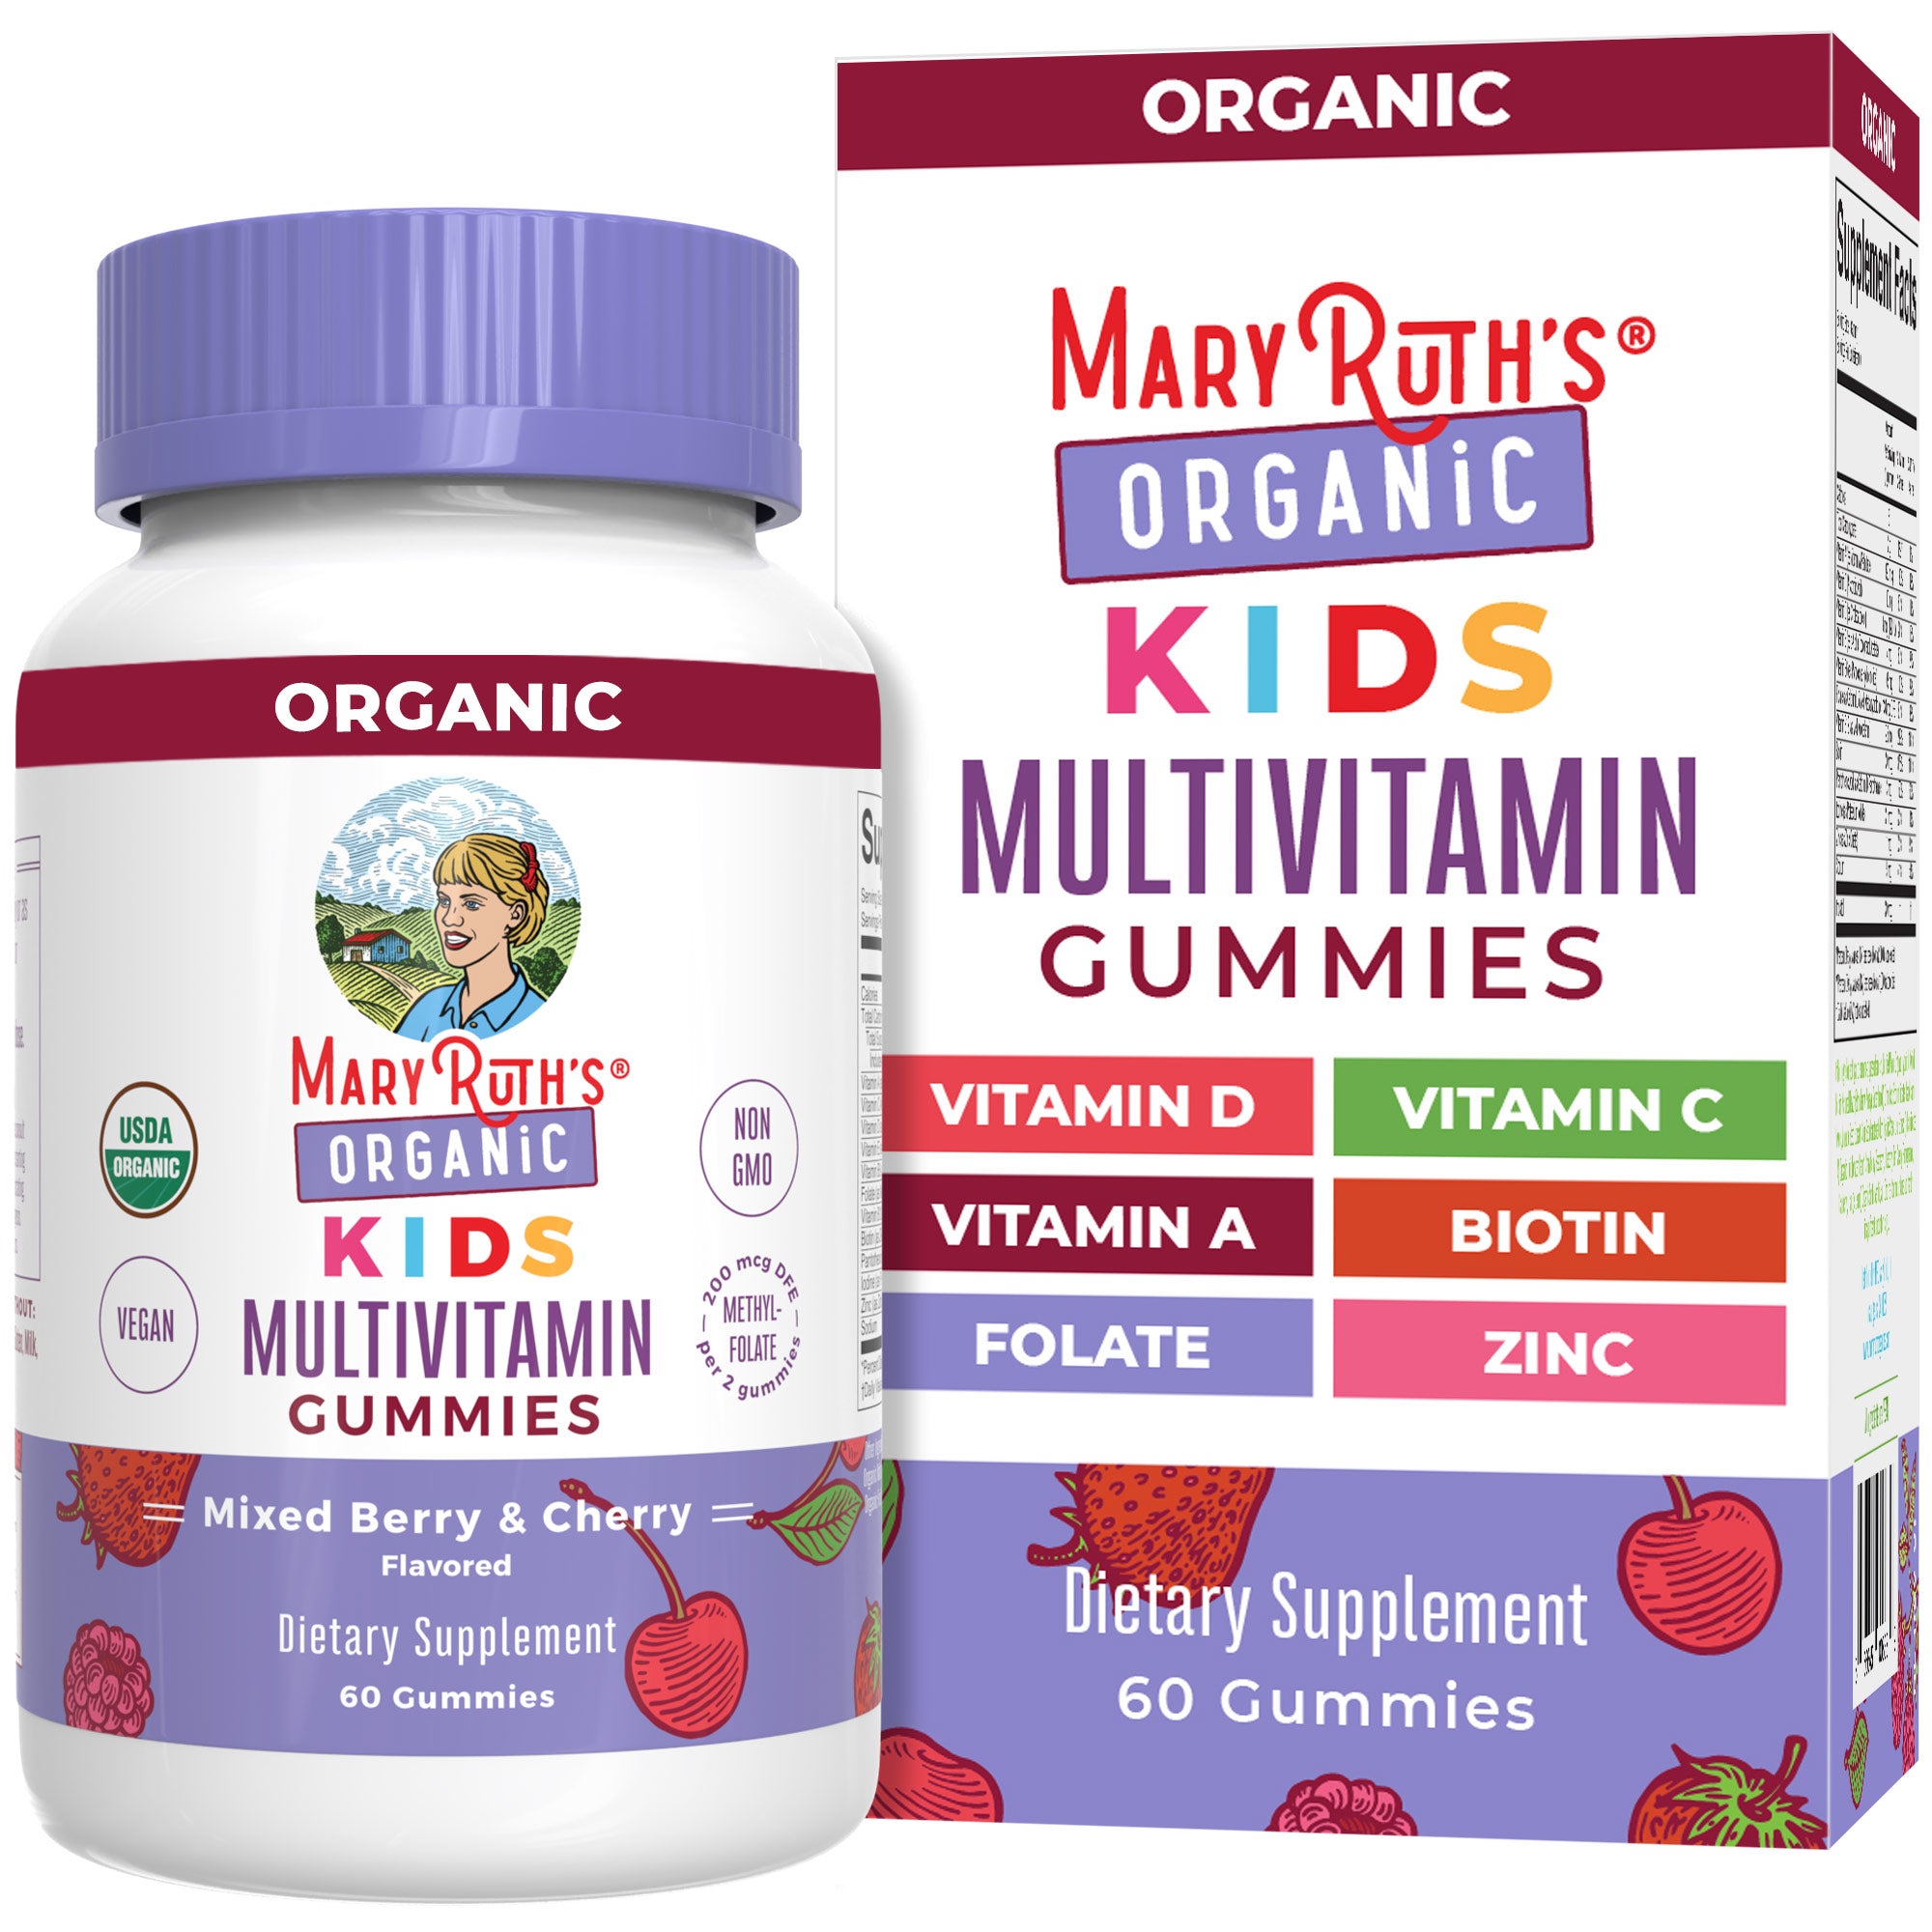 Organic Kids Multivitamin Gummies